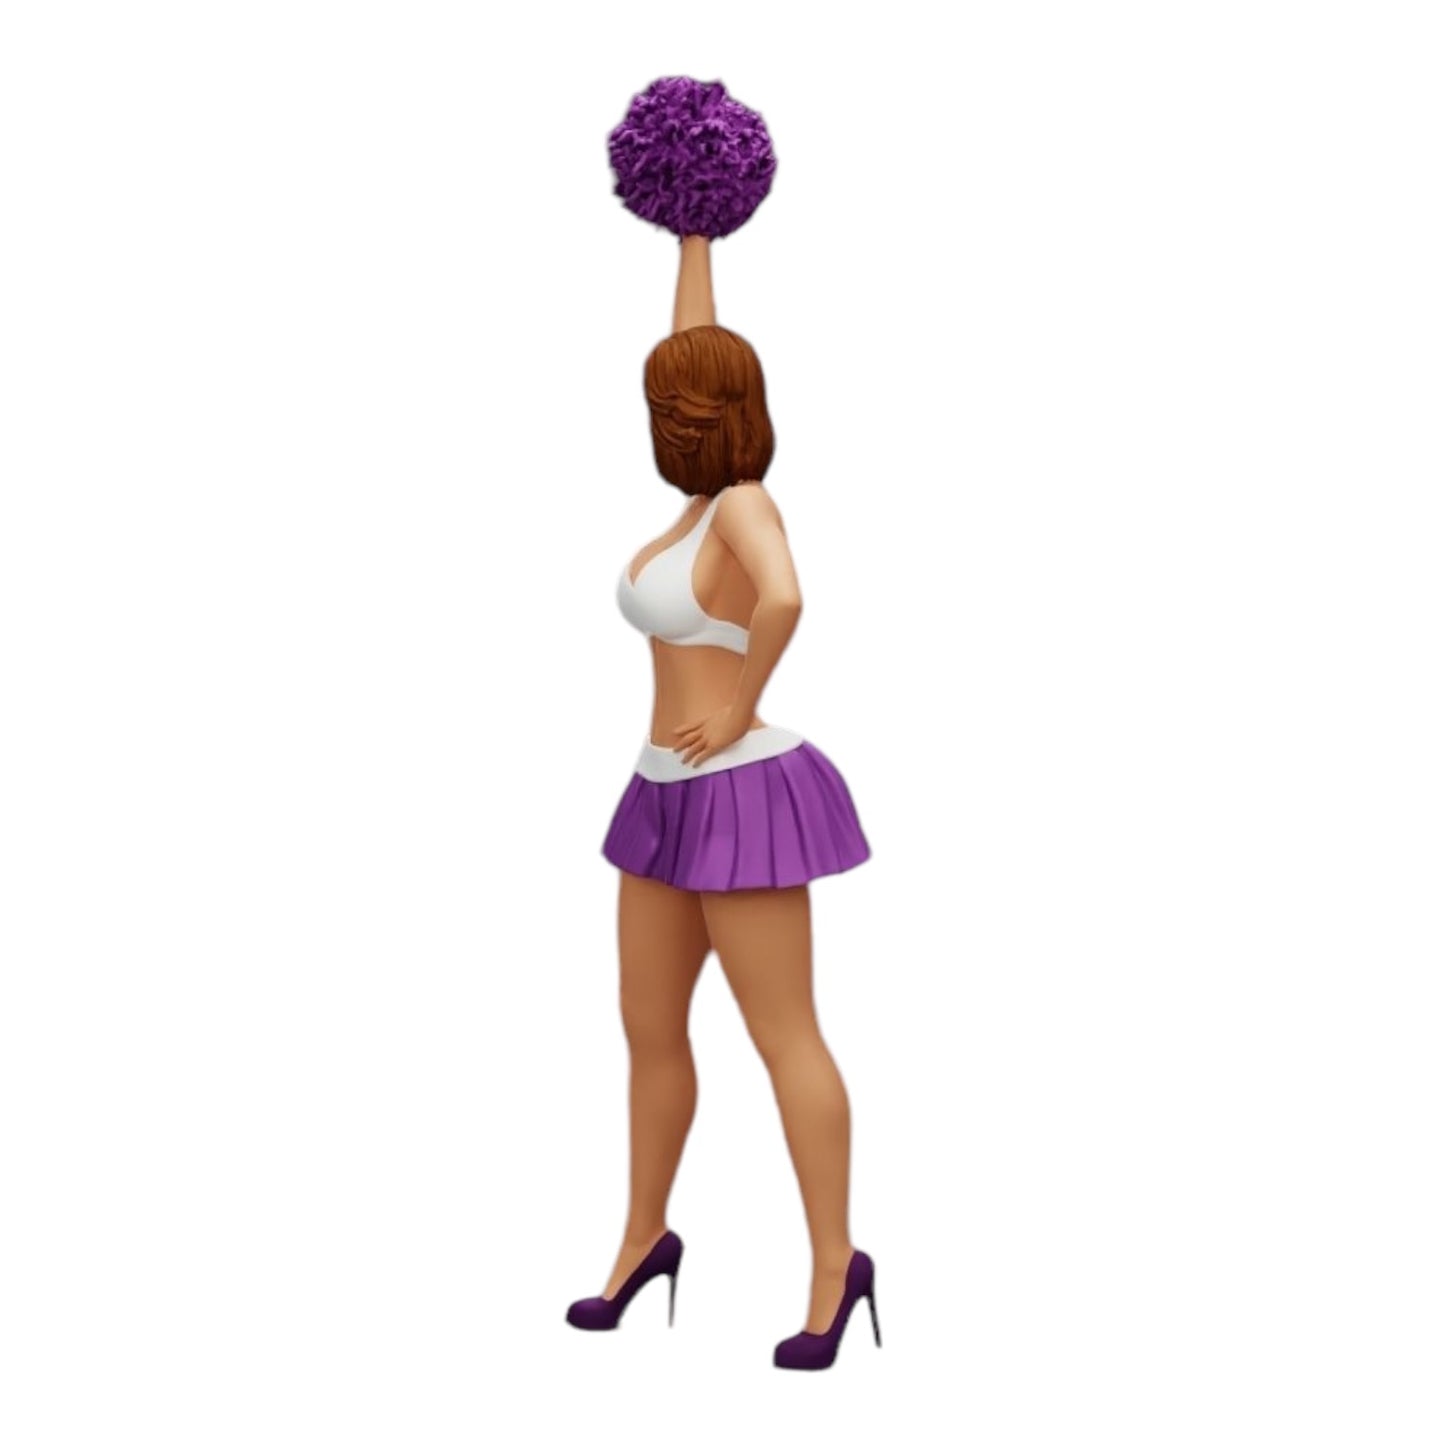 Diorama Modellbau Produktfoto 0: Junges Mädchen/ Cheerleader mit Pompons beim Anfeuern (Ref Nr. A3)